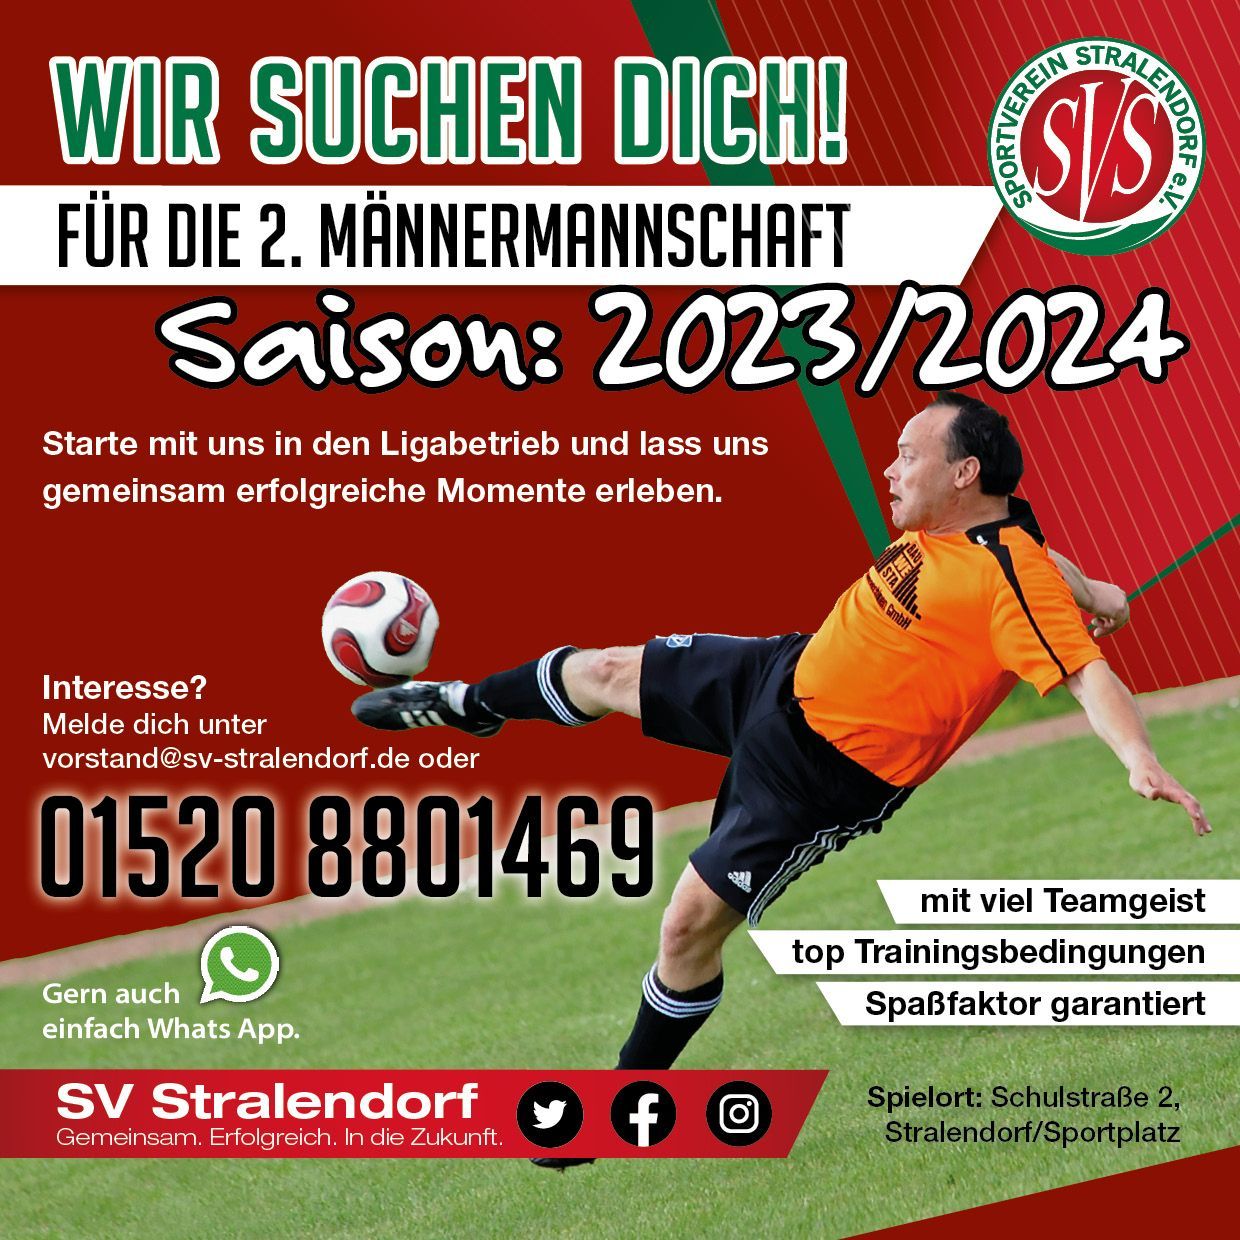 📢 Wir suchen DICH für die 2. Männermannschaft in Stralendorf! 📢